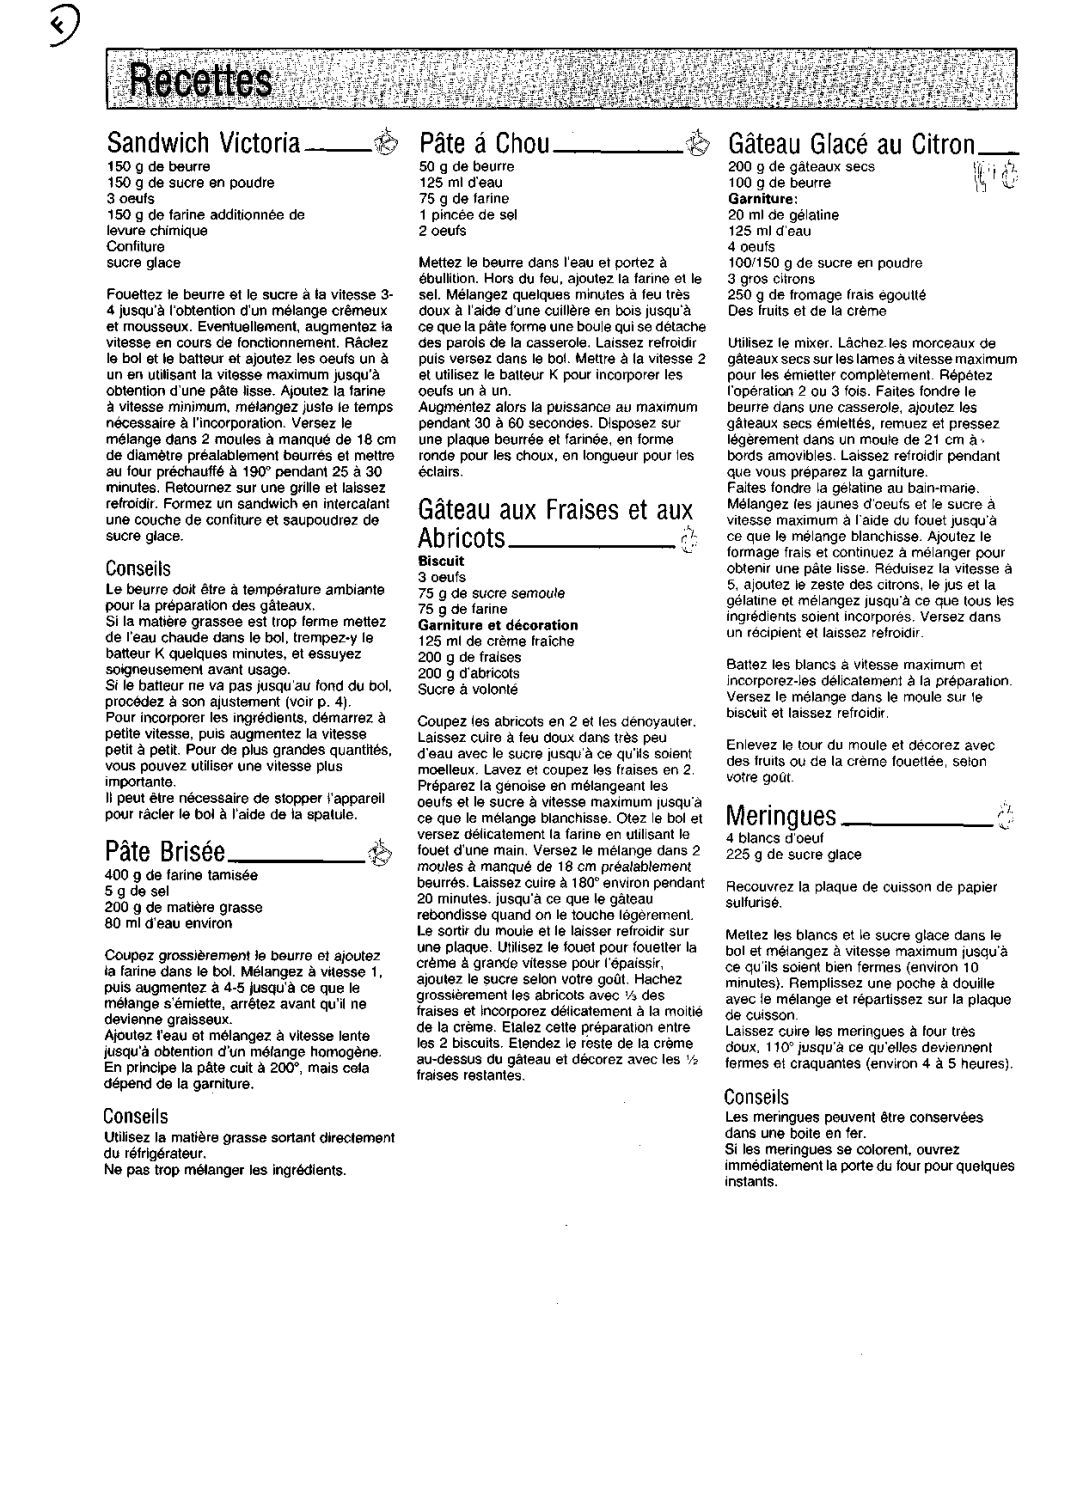 Kenwood KM200 manual Recettes, Sandwich Victoria, Pate Brisee, Pate a Chou, Abricots, Meringues, Gateau auxFraises et aux 